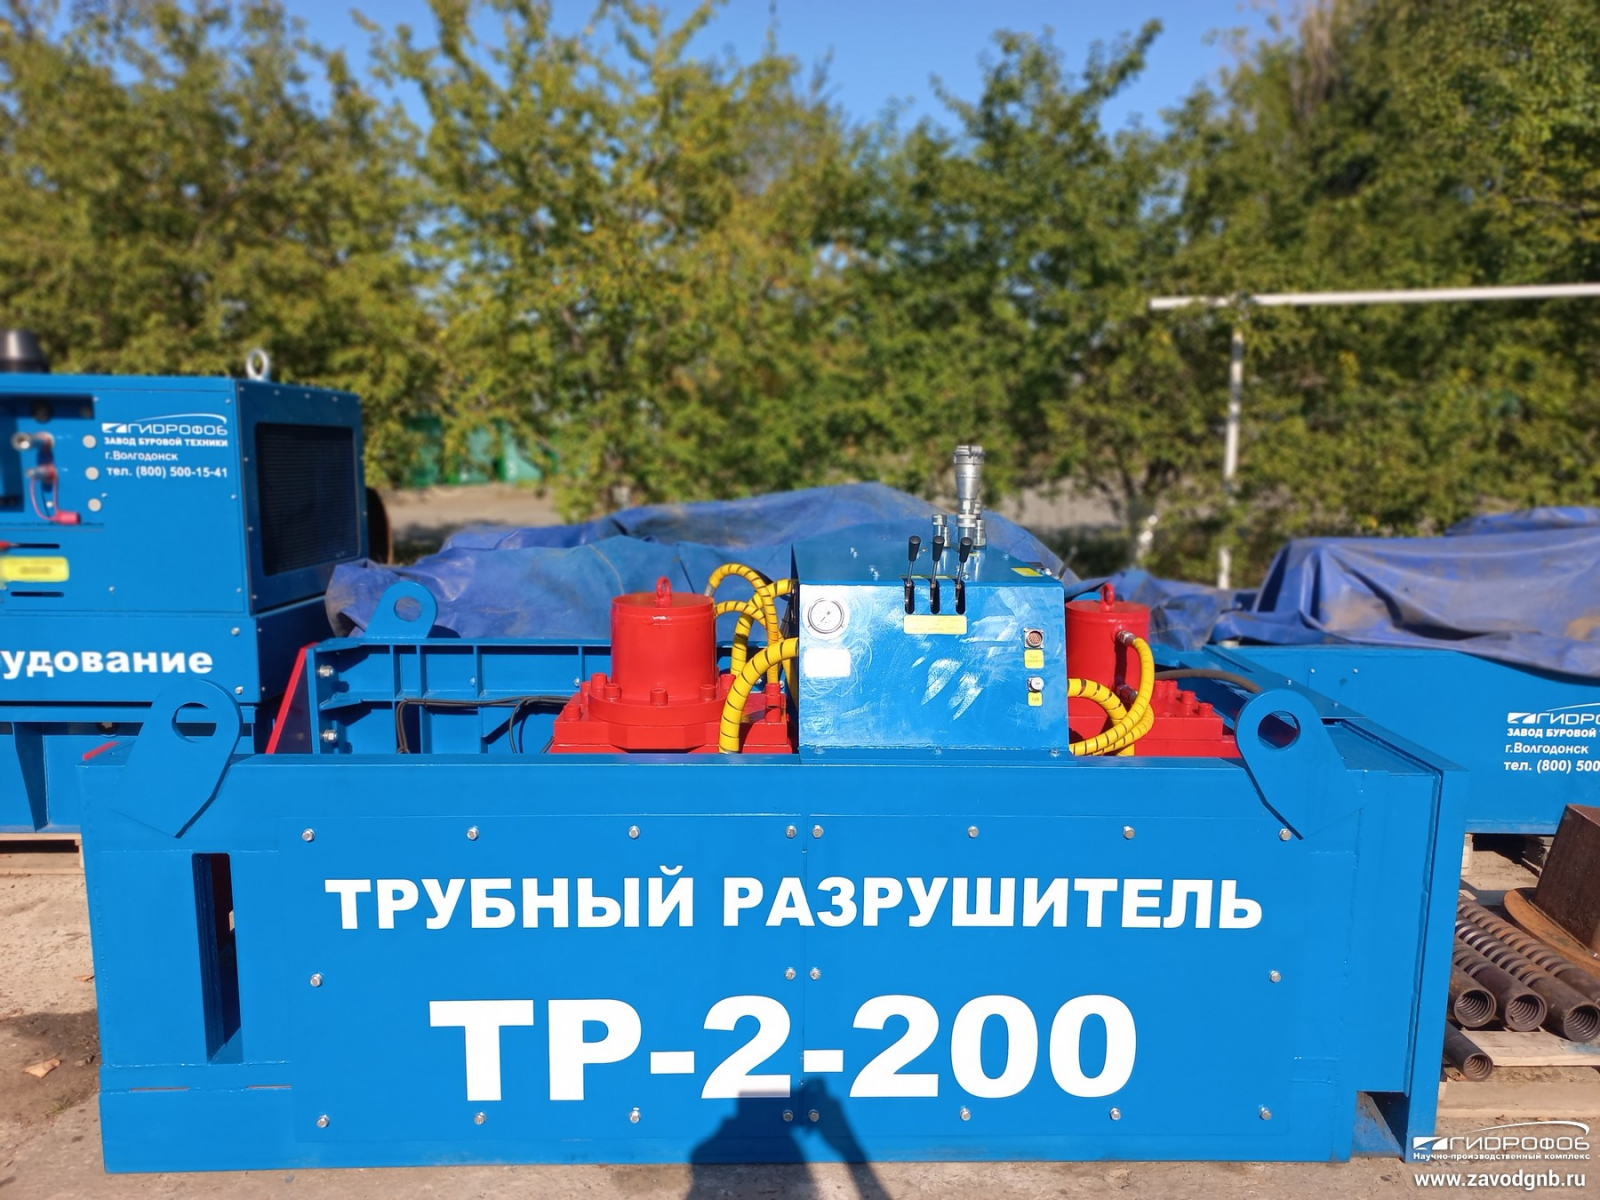 ТР-2-200 теперь есть в Самаре!